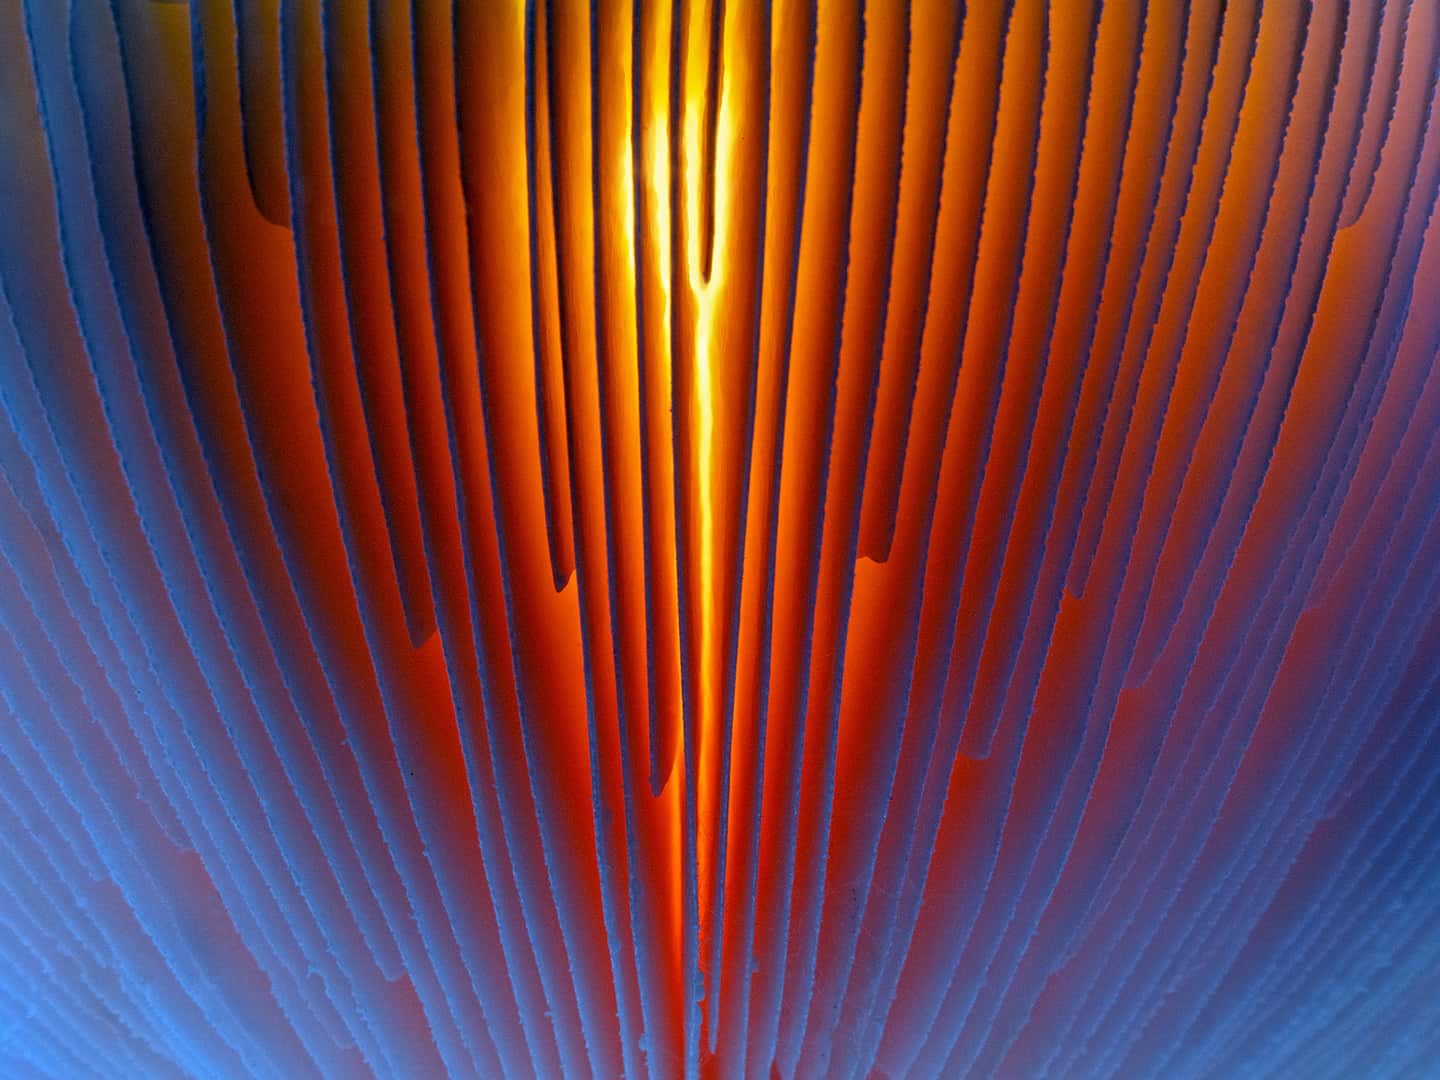 Onderkant van een vliegenzwam met de zon erachter. Categorie abstract.